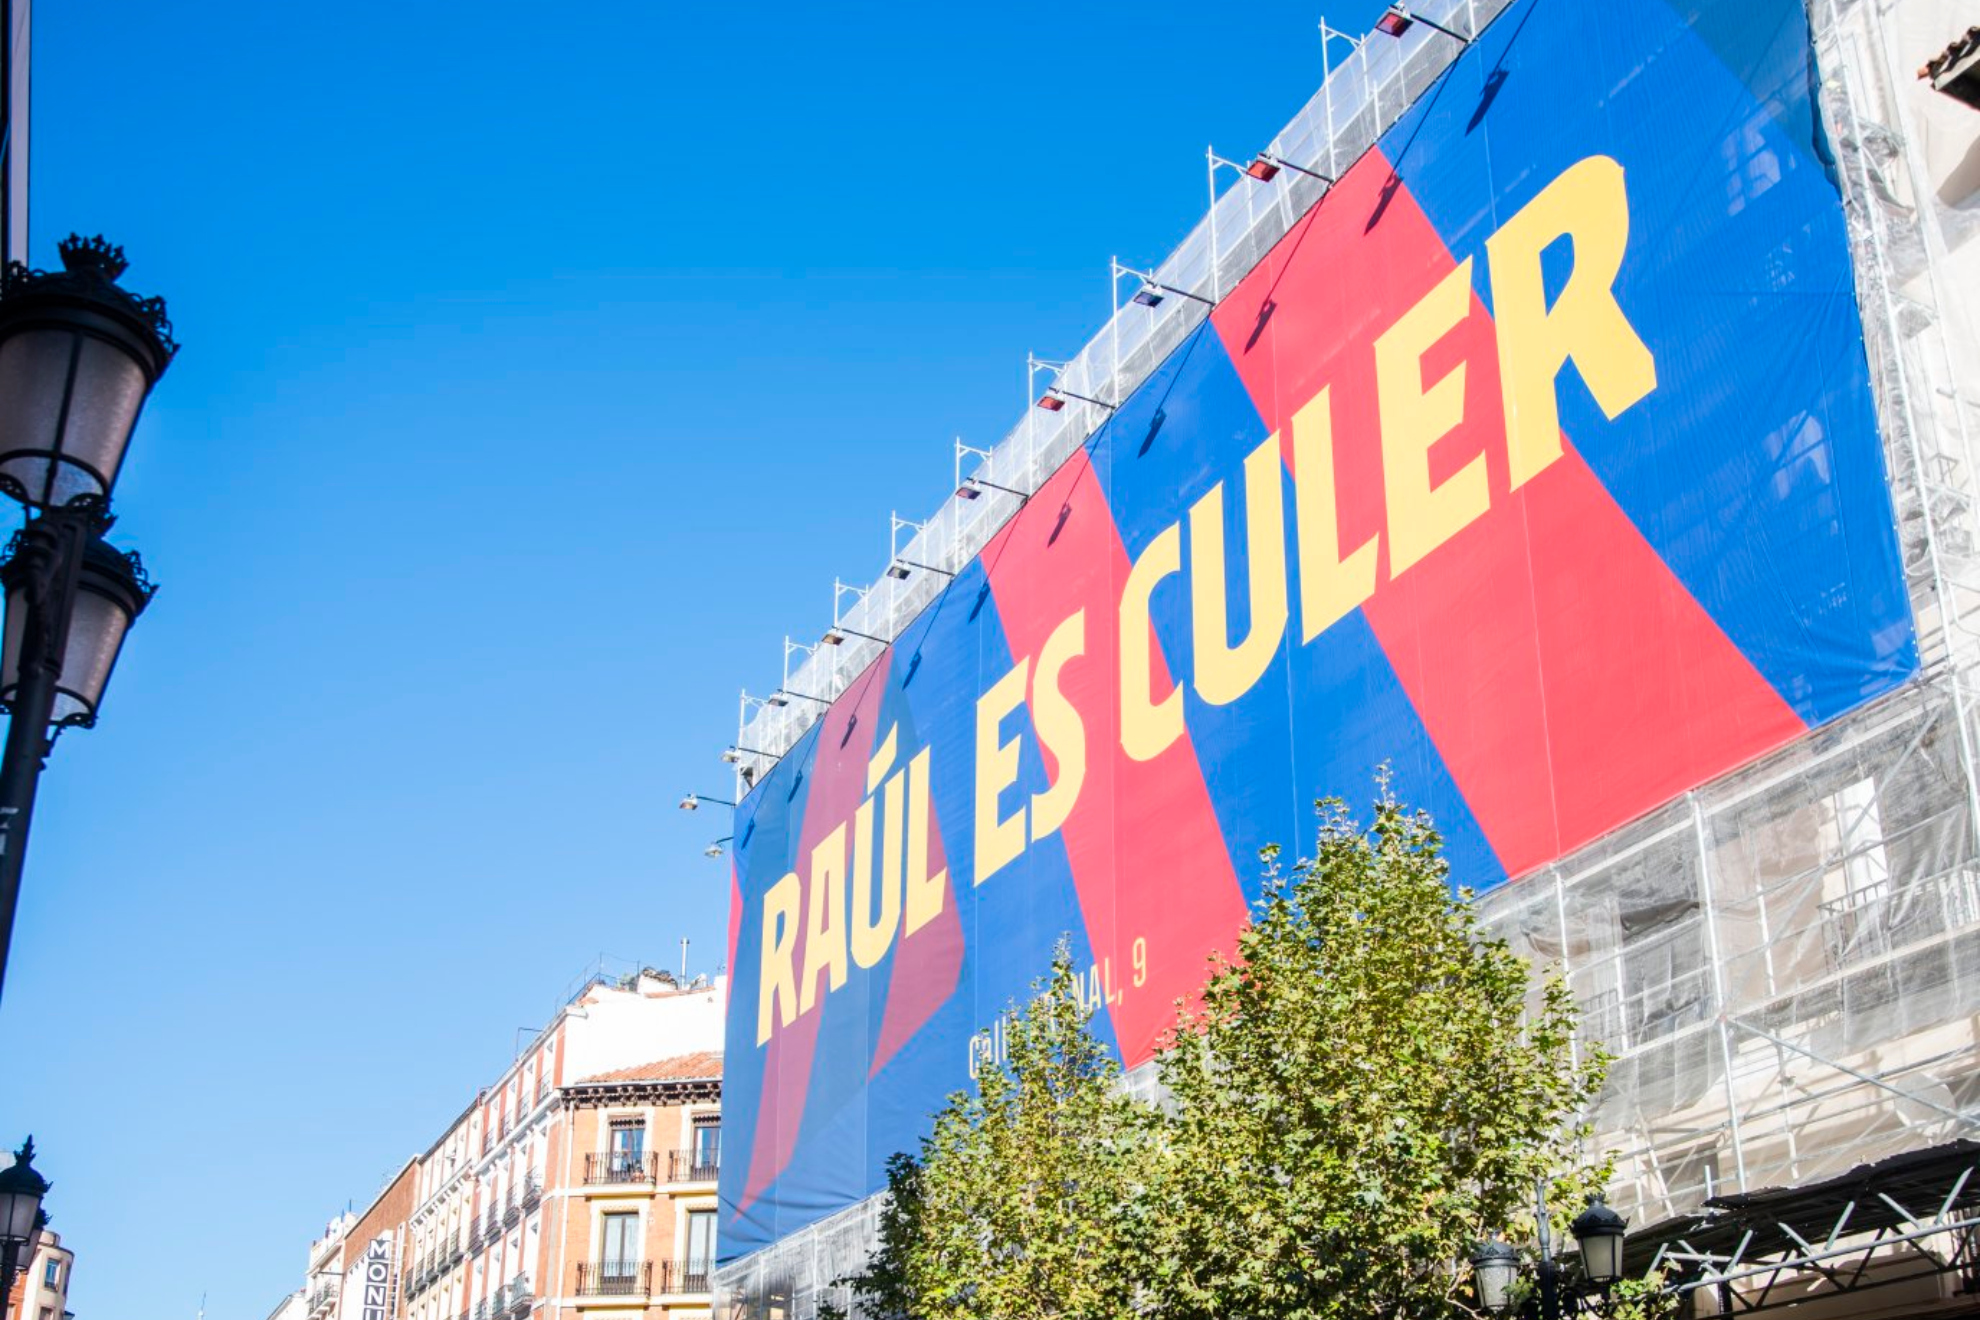 Lona desplegada para inaugurar la nueva tienda del Barça en el centro de Madrid.